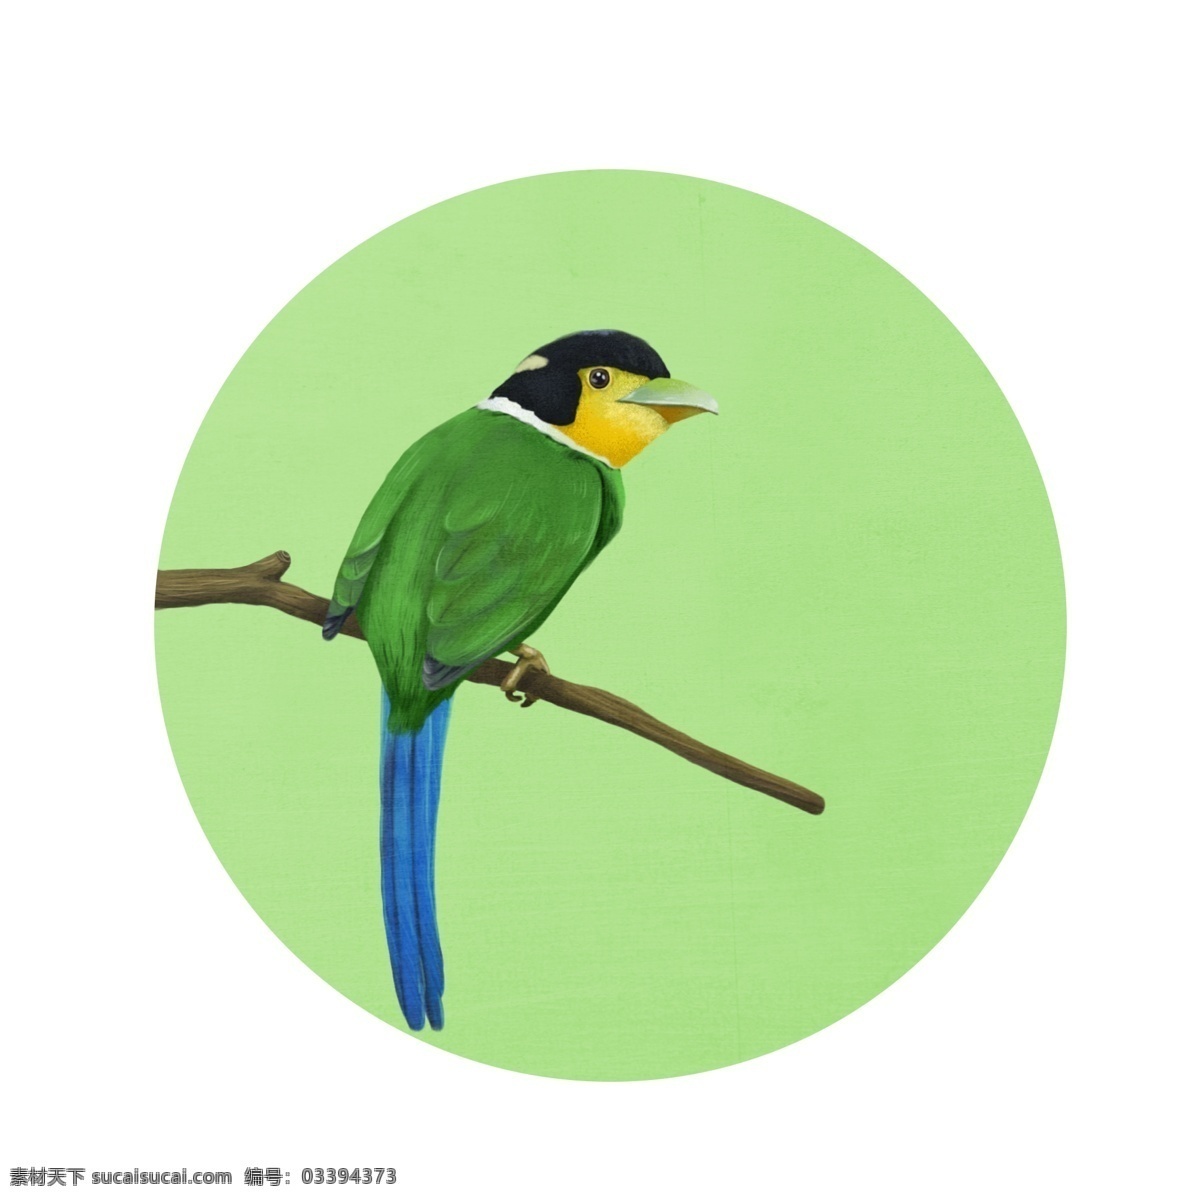 各种 风格 类型 鸟类 元素 手绘 插画 鸟 飞禽 树林 卡通 节日 爱鸟日